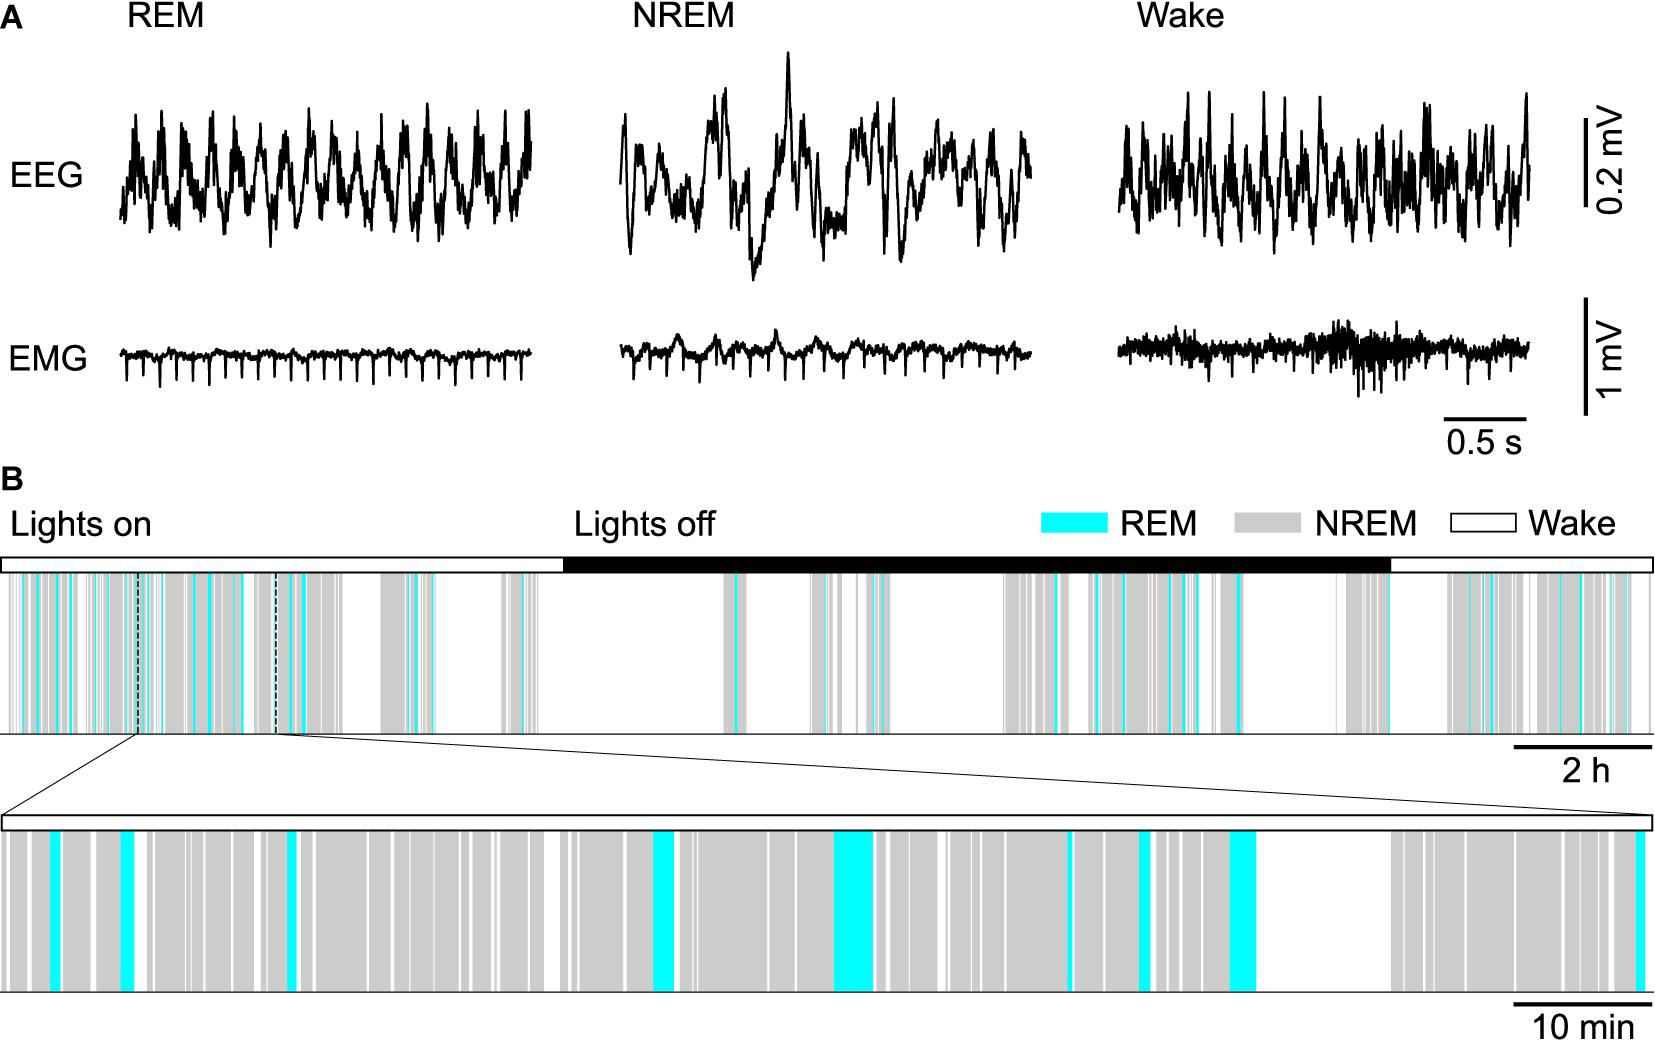 A - Grabaciones EEG y EMG de un ratón cuando está en REM, NREM y vigilia, B - vigilia de sueño y periodos NREM con inserción de 2 horas